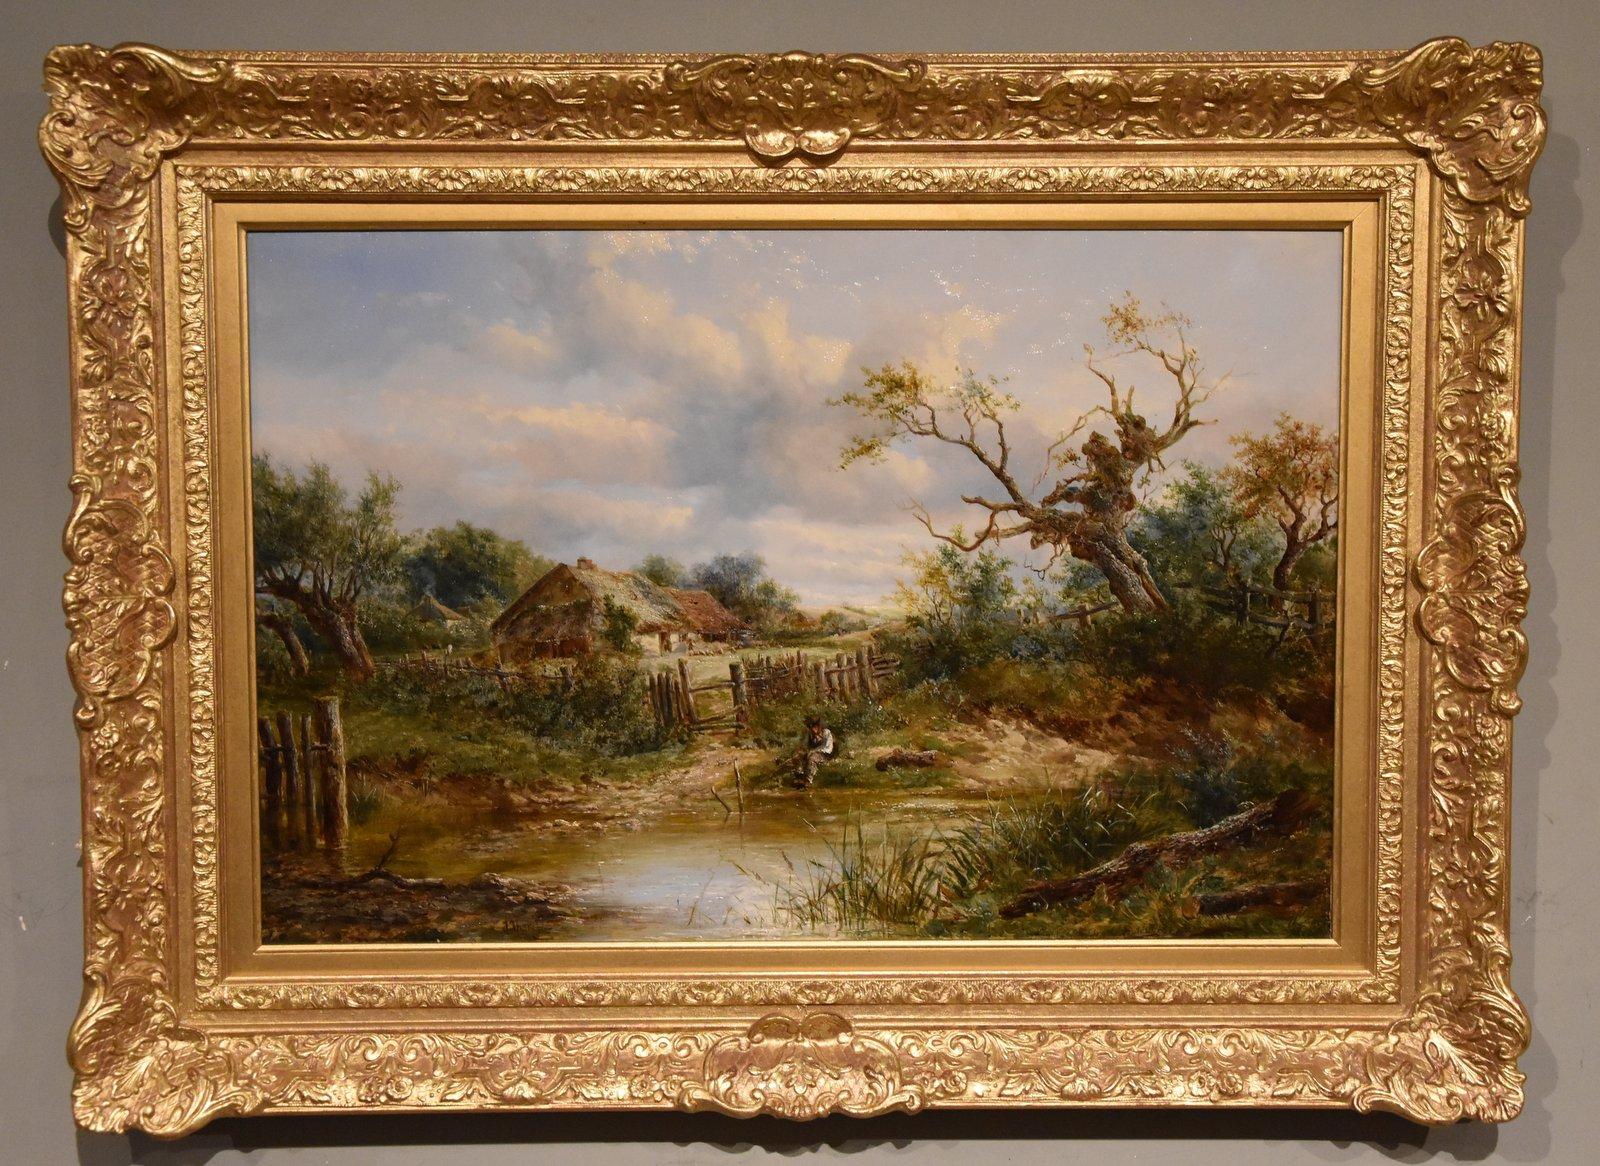 Peinture à l'huile de Joseph Thors "A Quiet Day by The River" 1843 -1907 Peintre populaire de paysages ruraux à la manière de l'école de Norwich. Exposant régulier à la Royal Academy Society et au British Institute. Huile sur toile. Signé et daté